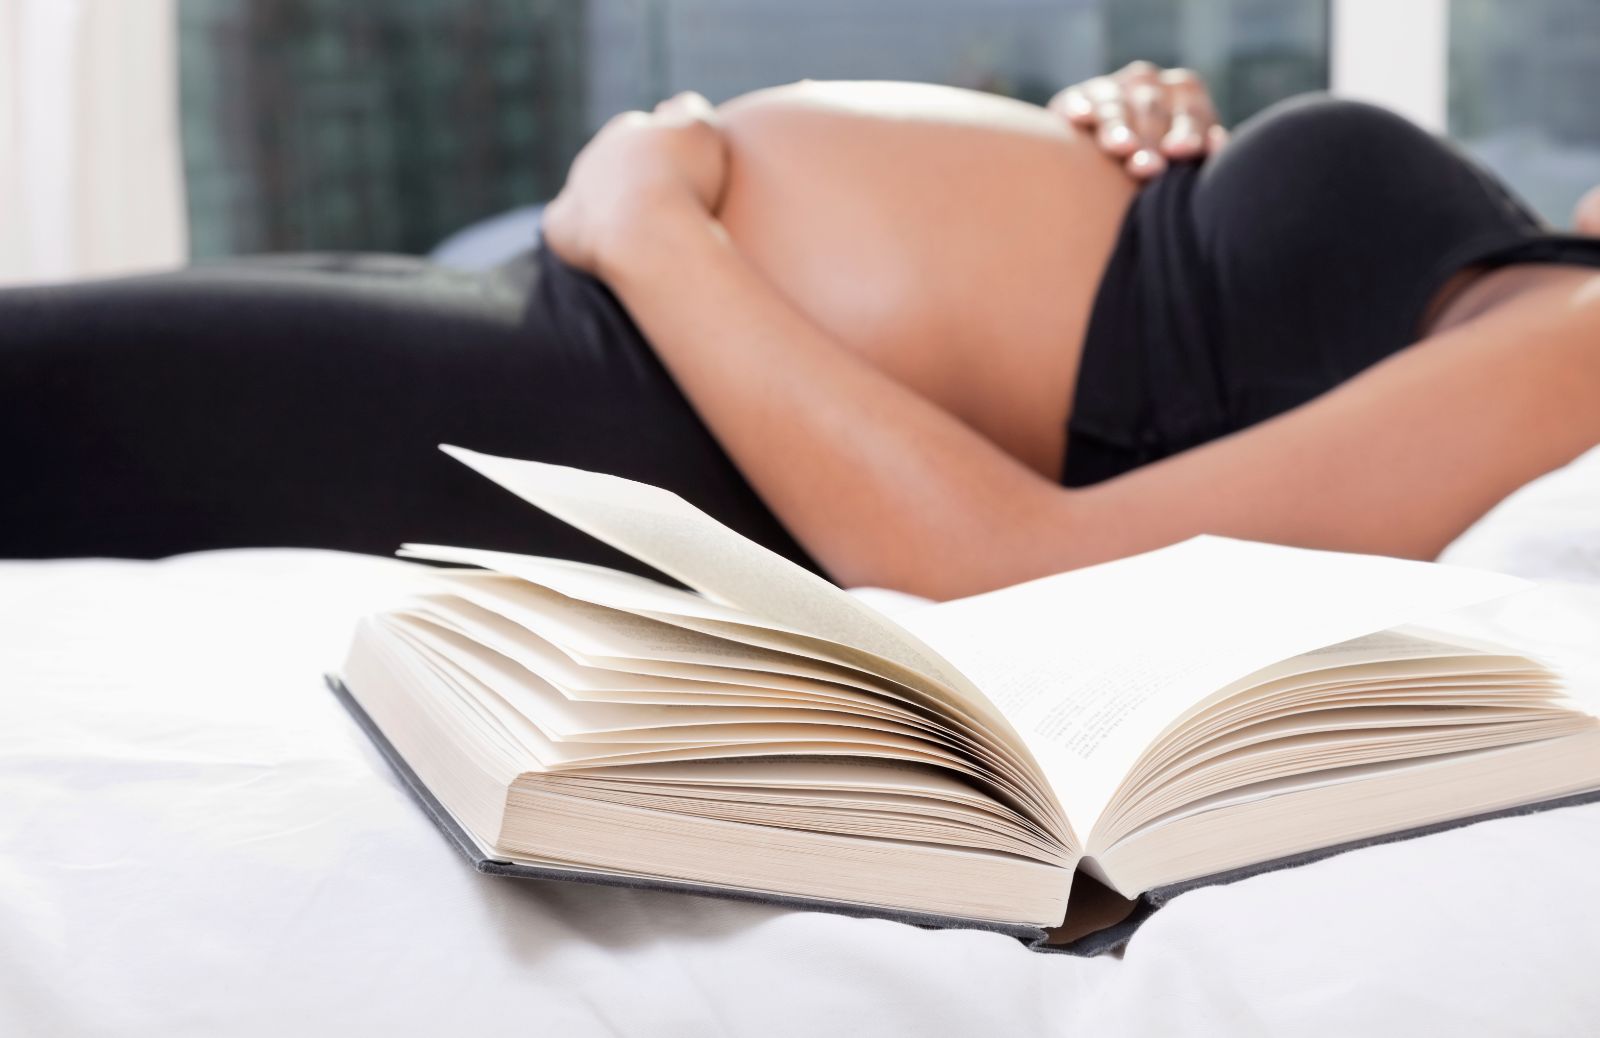 Arriva un bebè: i libri da leggere prima del lieto evento